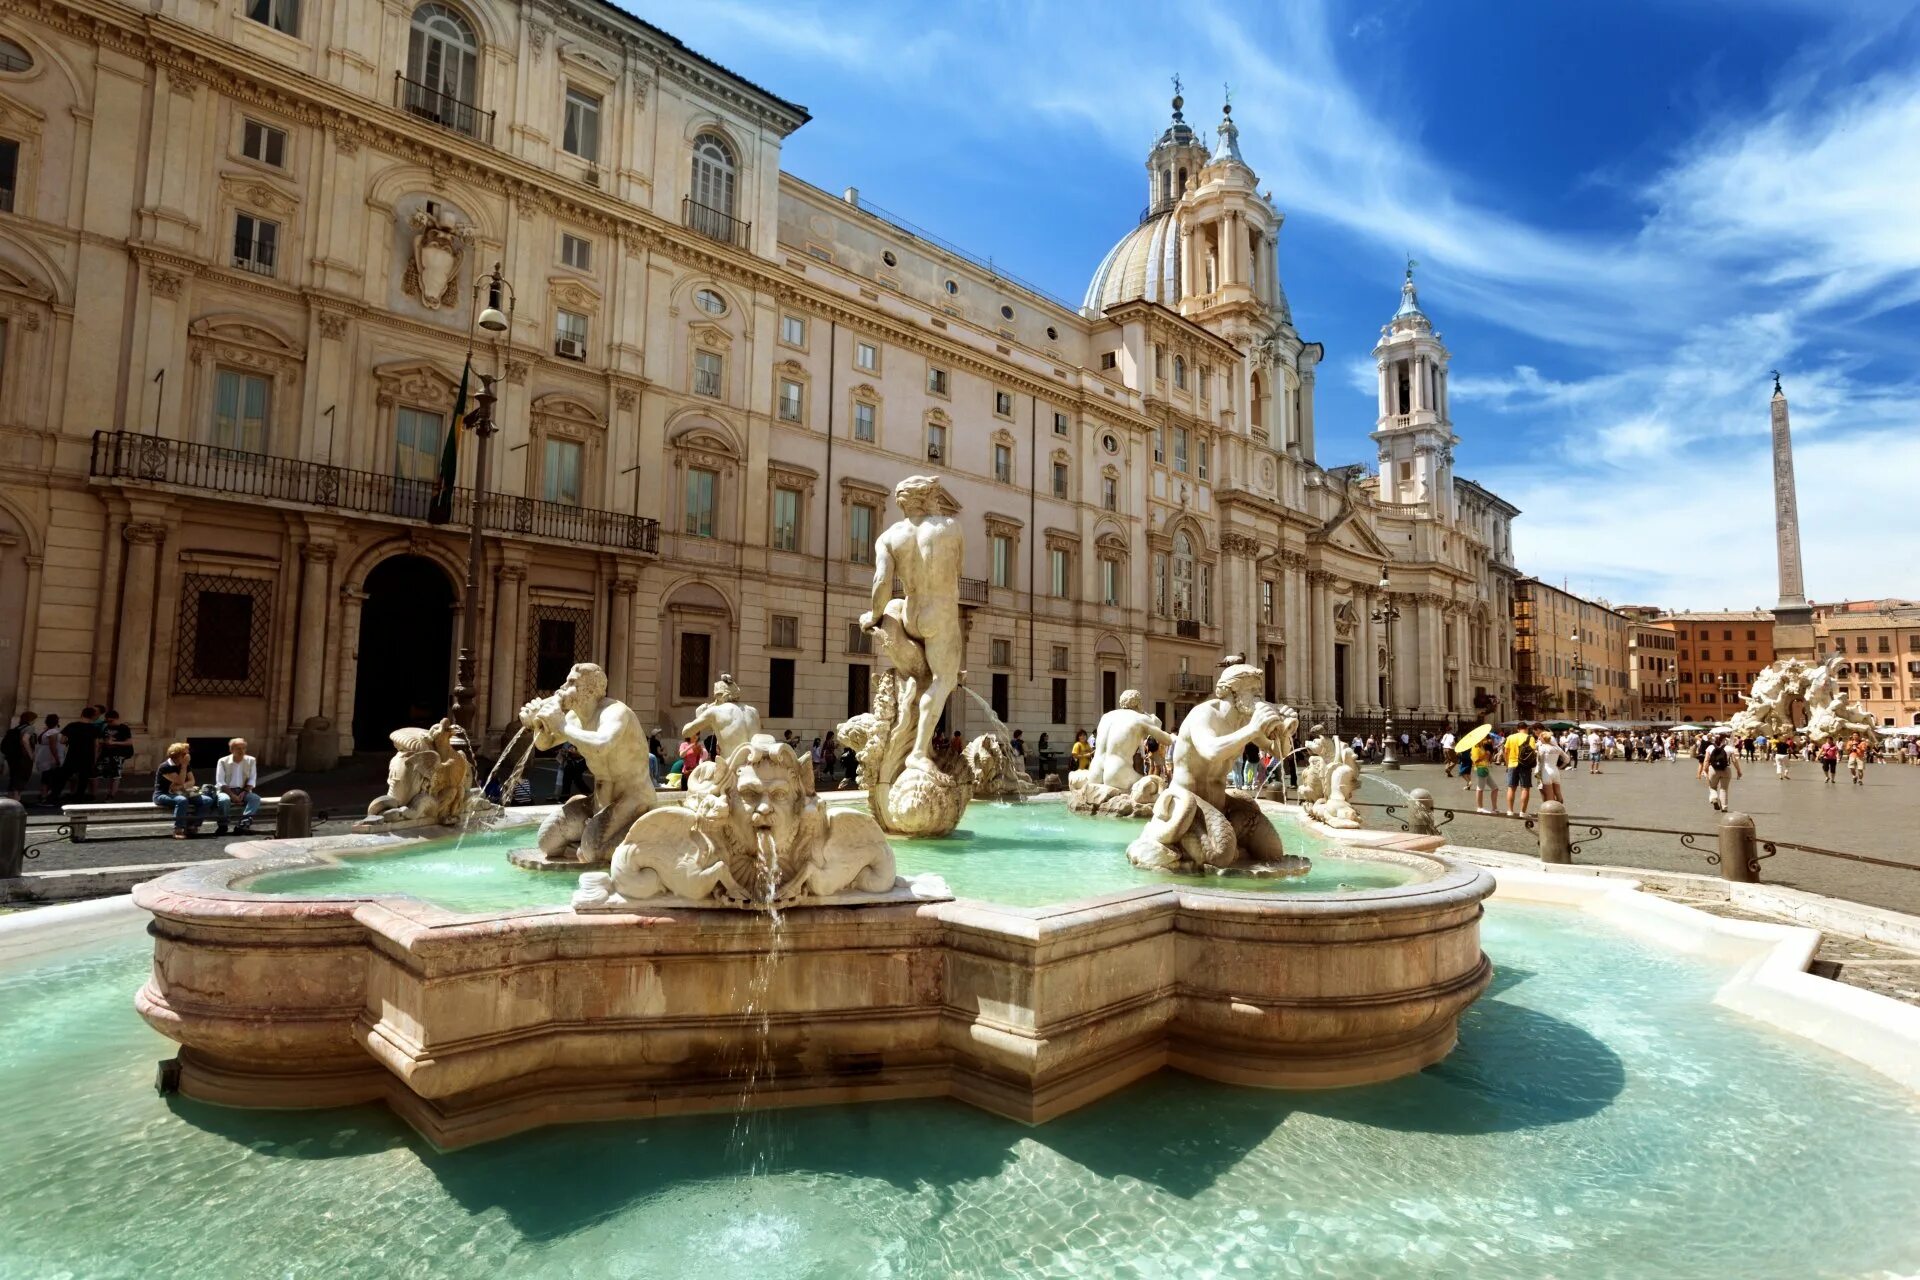 Tourist area. Италия фонтан Треви (г. Рим). Площадь Треви в Риме. Пьяцца Навона фонтан. Площадь Навона в Риме.